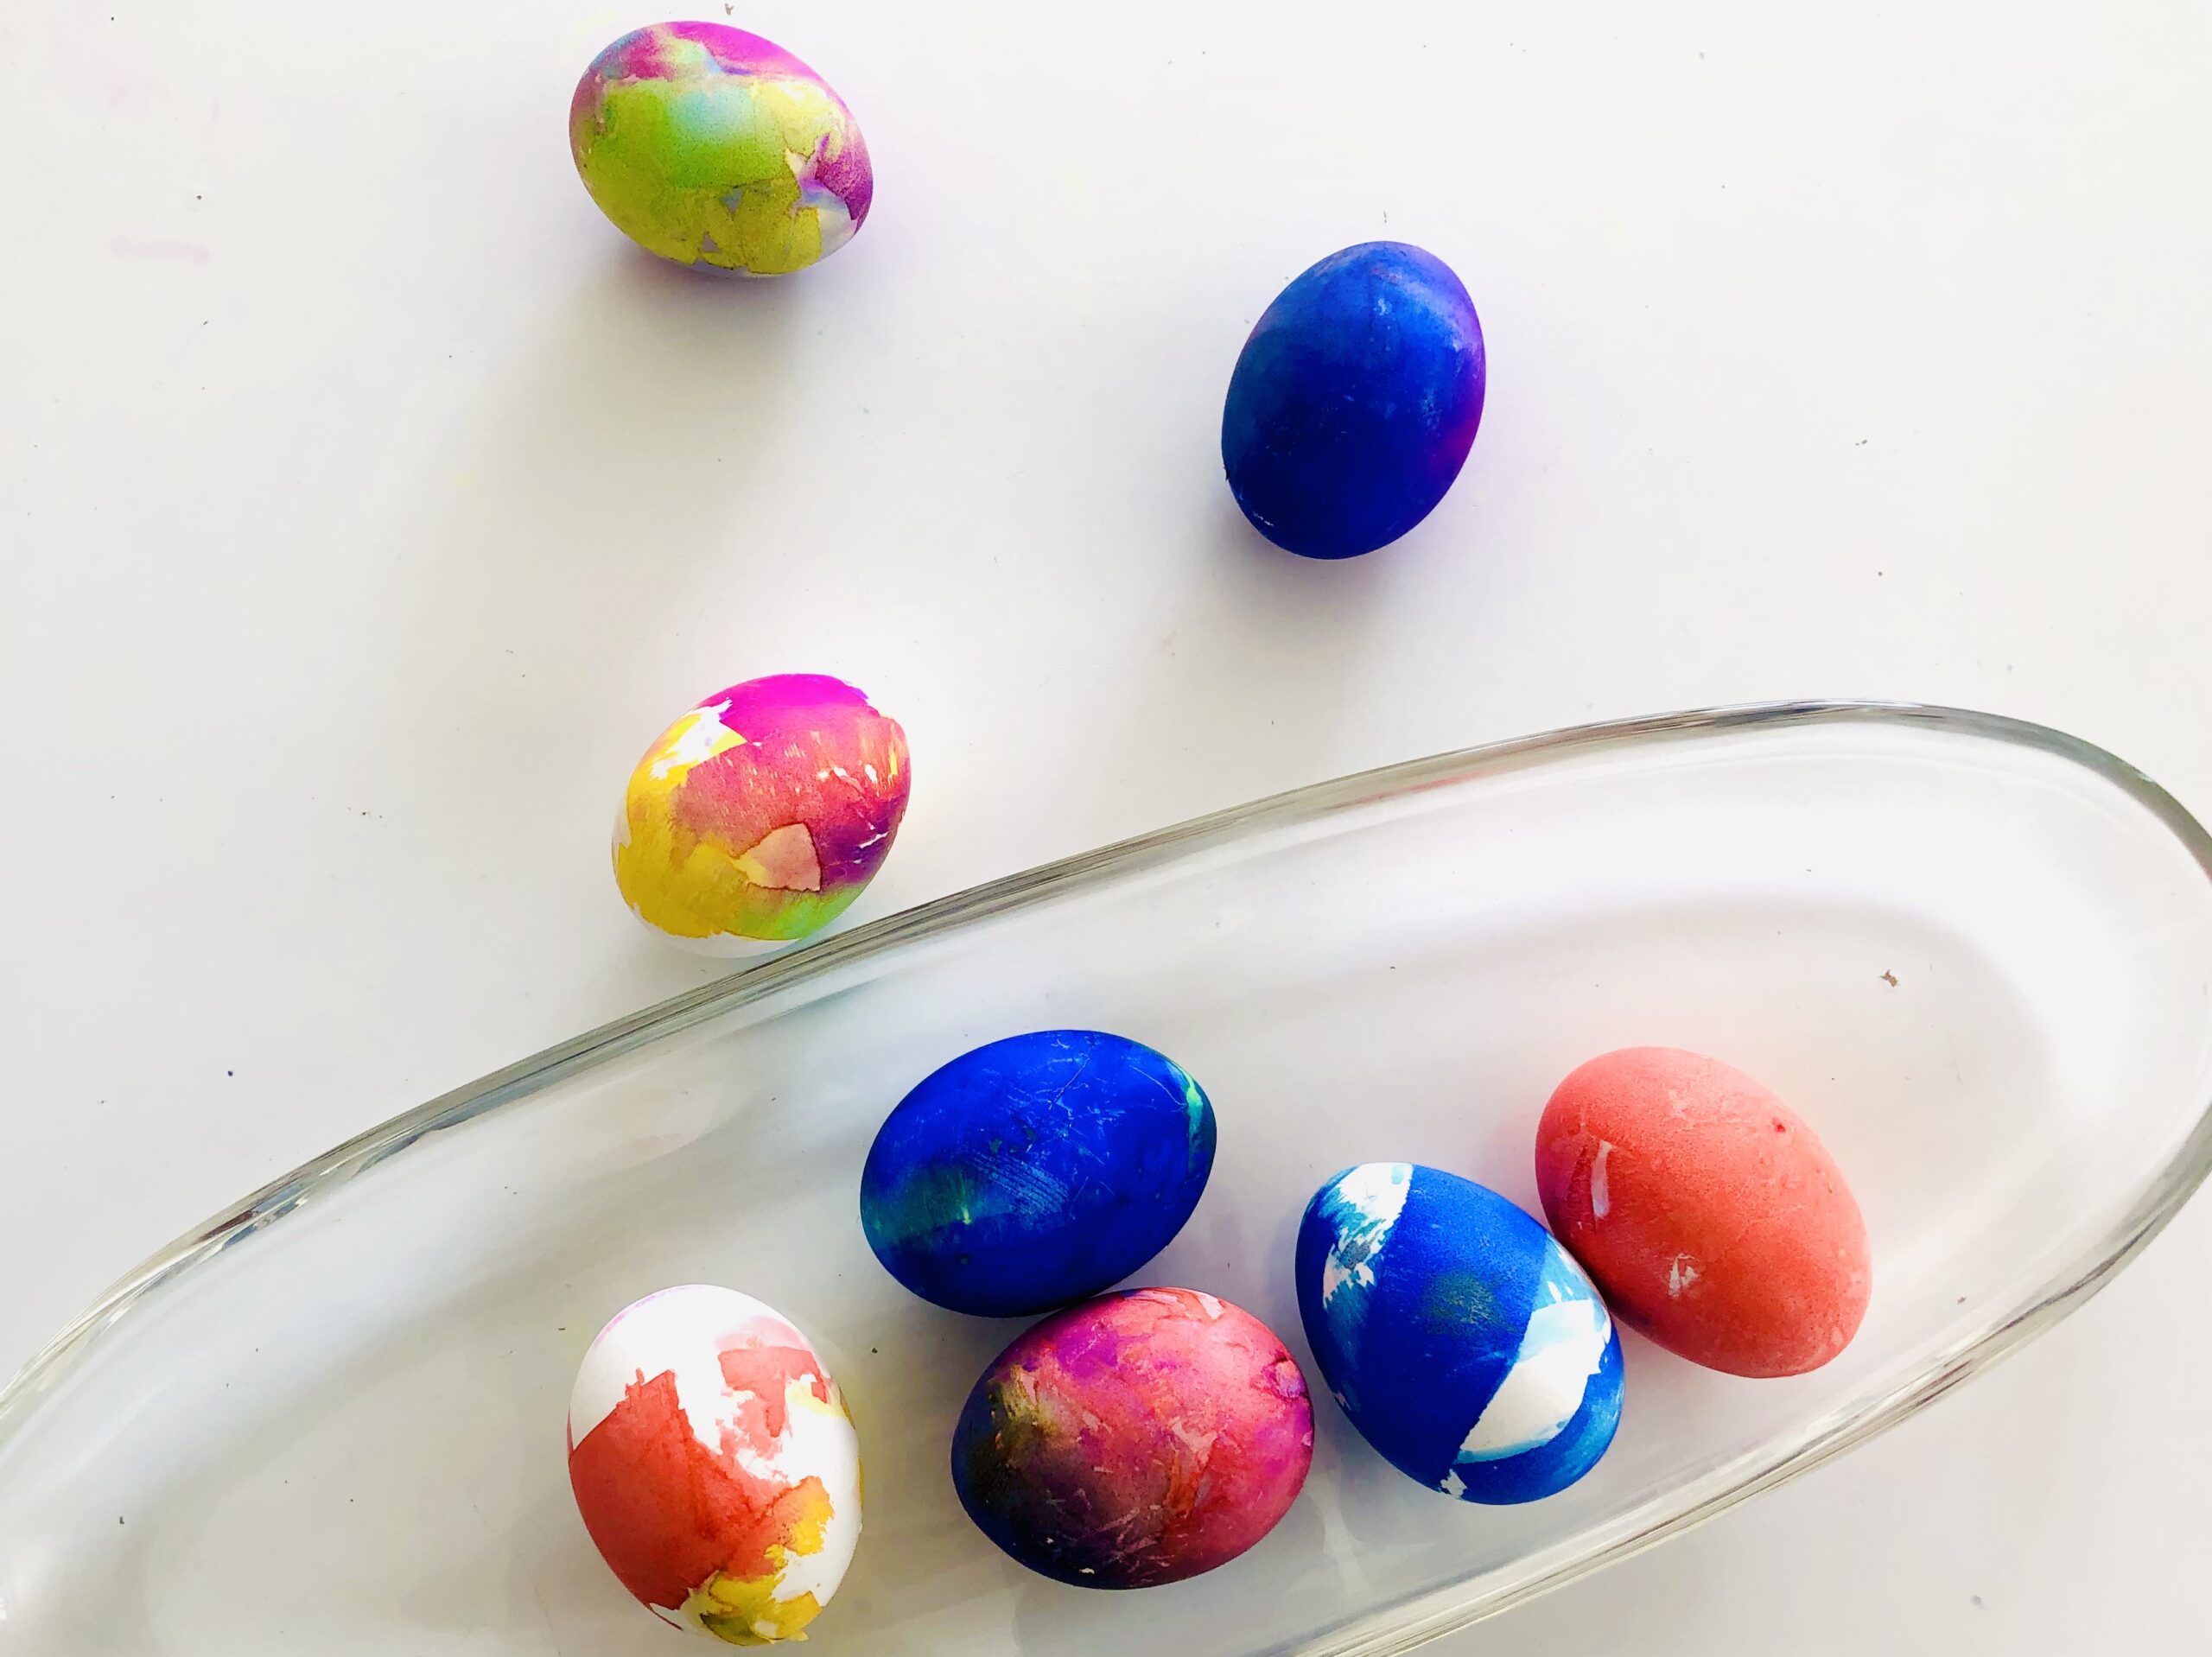 Bild zum Schritt 11 für die Kinder-Beschäftigung: 'Die Eier leuchten in schönen bunten Farben.'